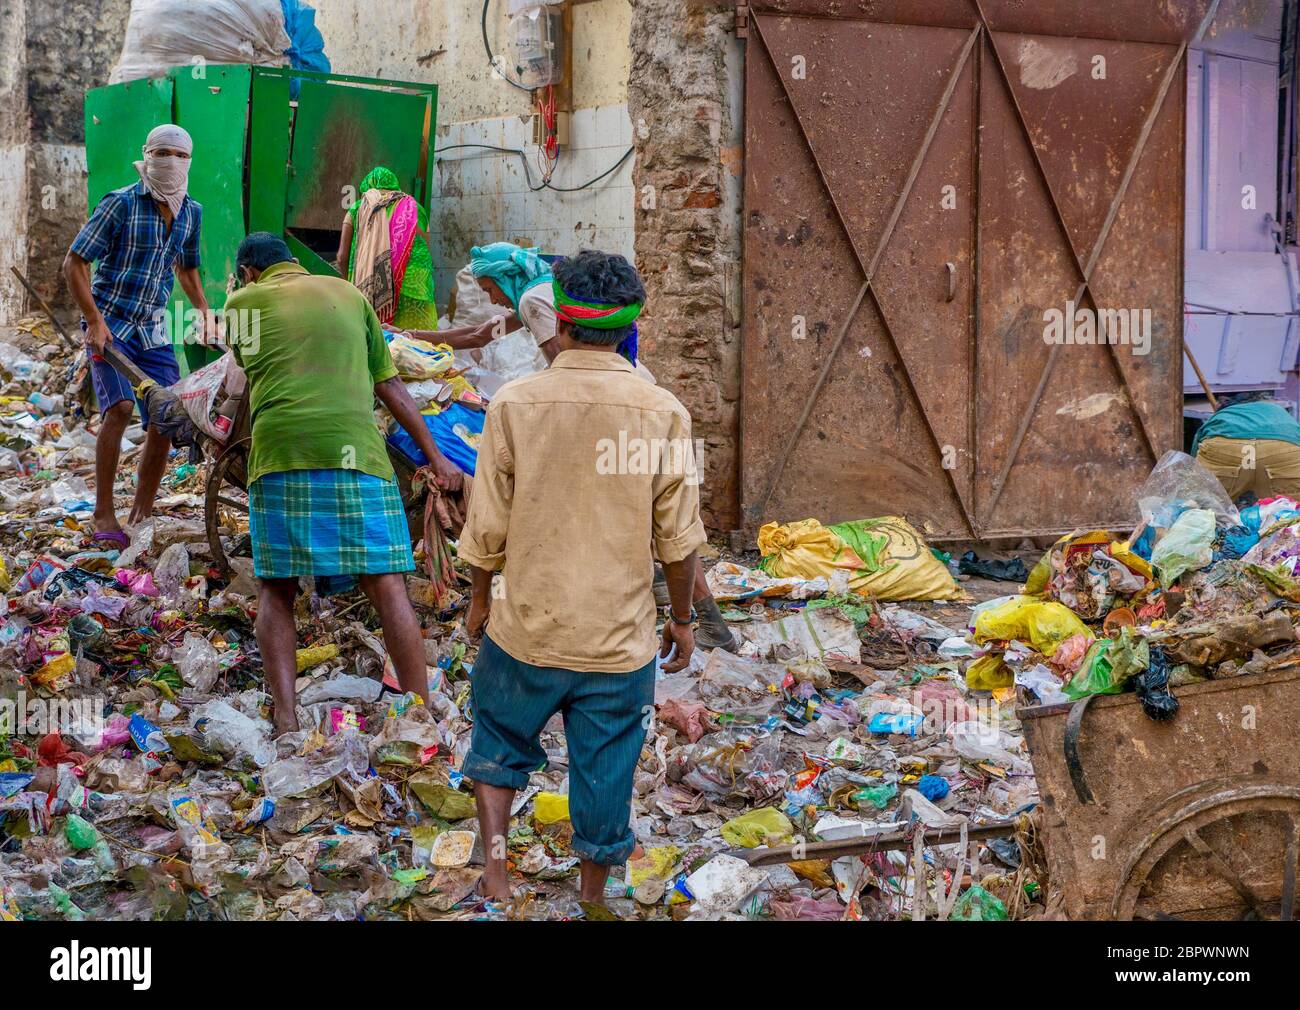 Varanasi, India - 13 novembre 2015. Un sito di discarica dei rifiuti urbani, dove i cittadini scaricano i rifiuti domestici, creando problemi di salute pubblica e di rifiuti. Foto Stock